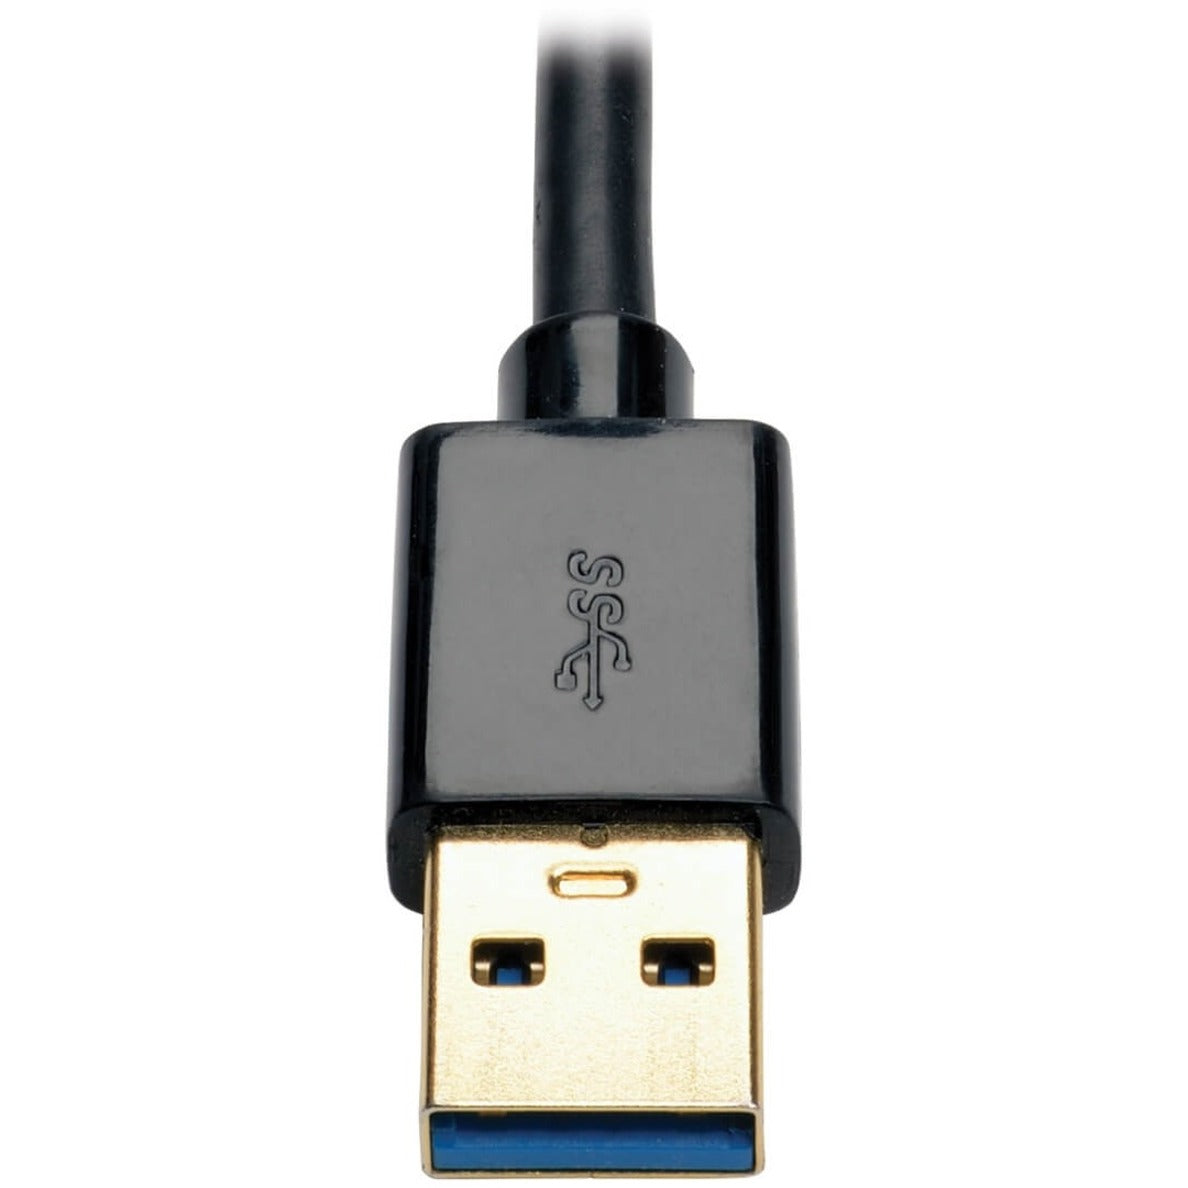 Tripp Lite U344-001-VGA USB 3.0 SuperSpeed to VGA Adapter, 512MB SDRAM - 2048x1152,1080p